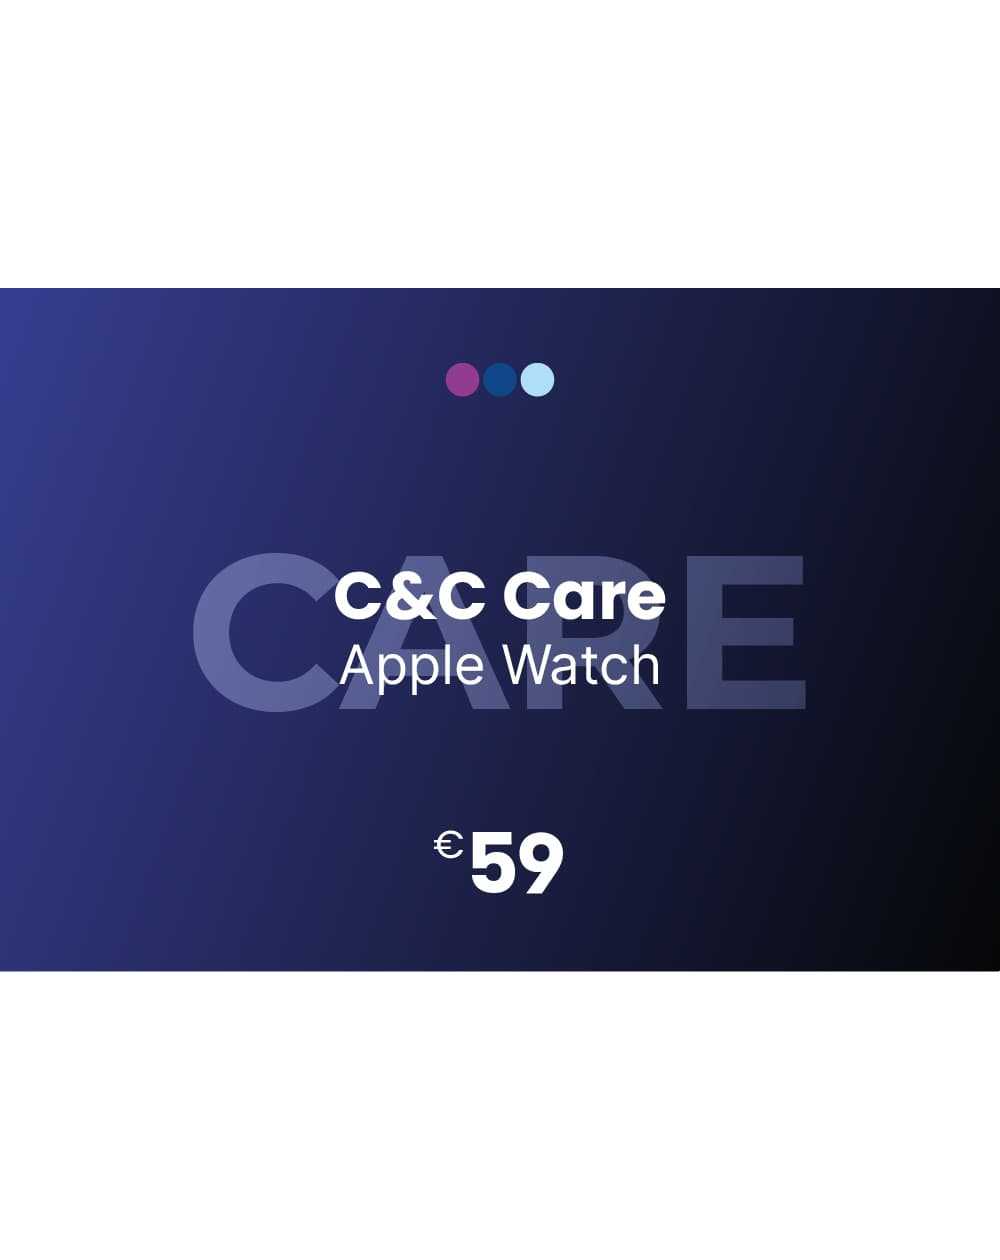 C&C Care per Apple Watch - C&C Shop